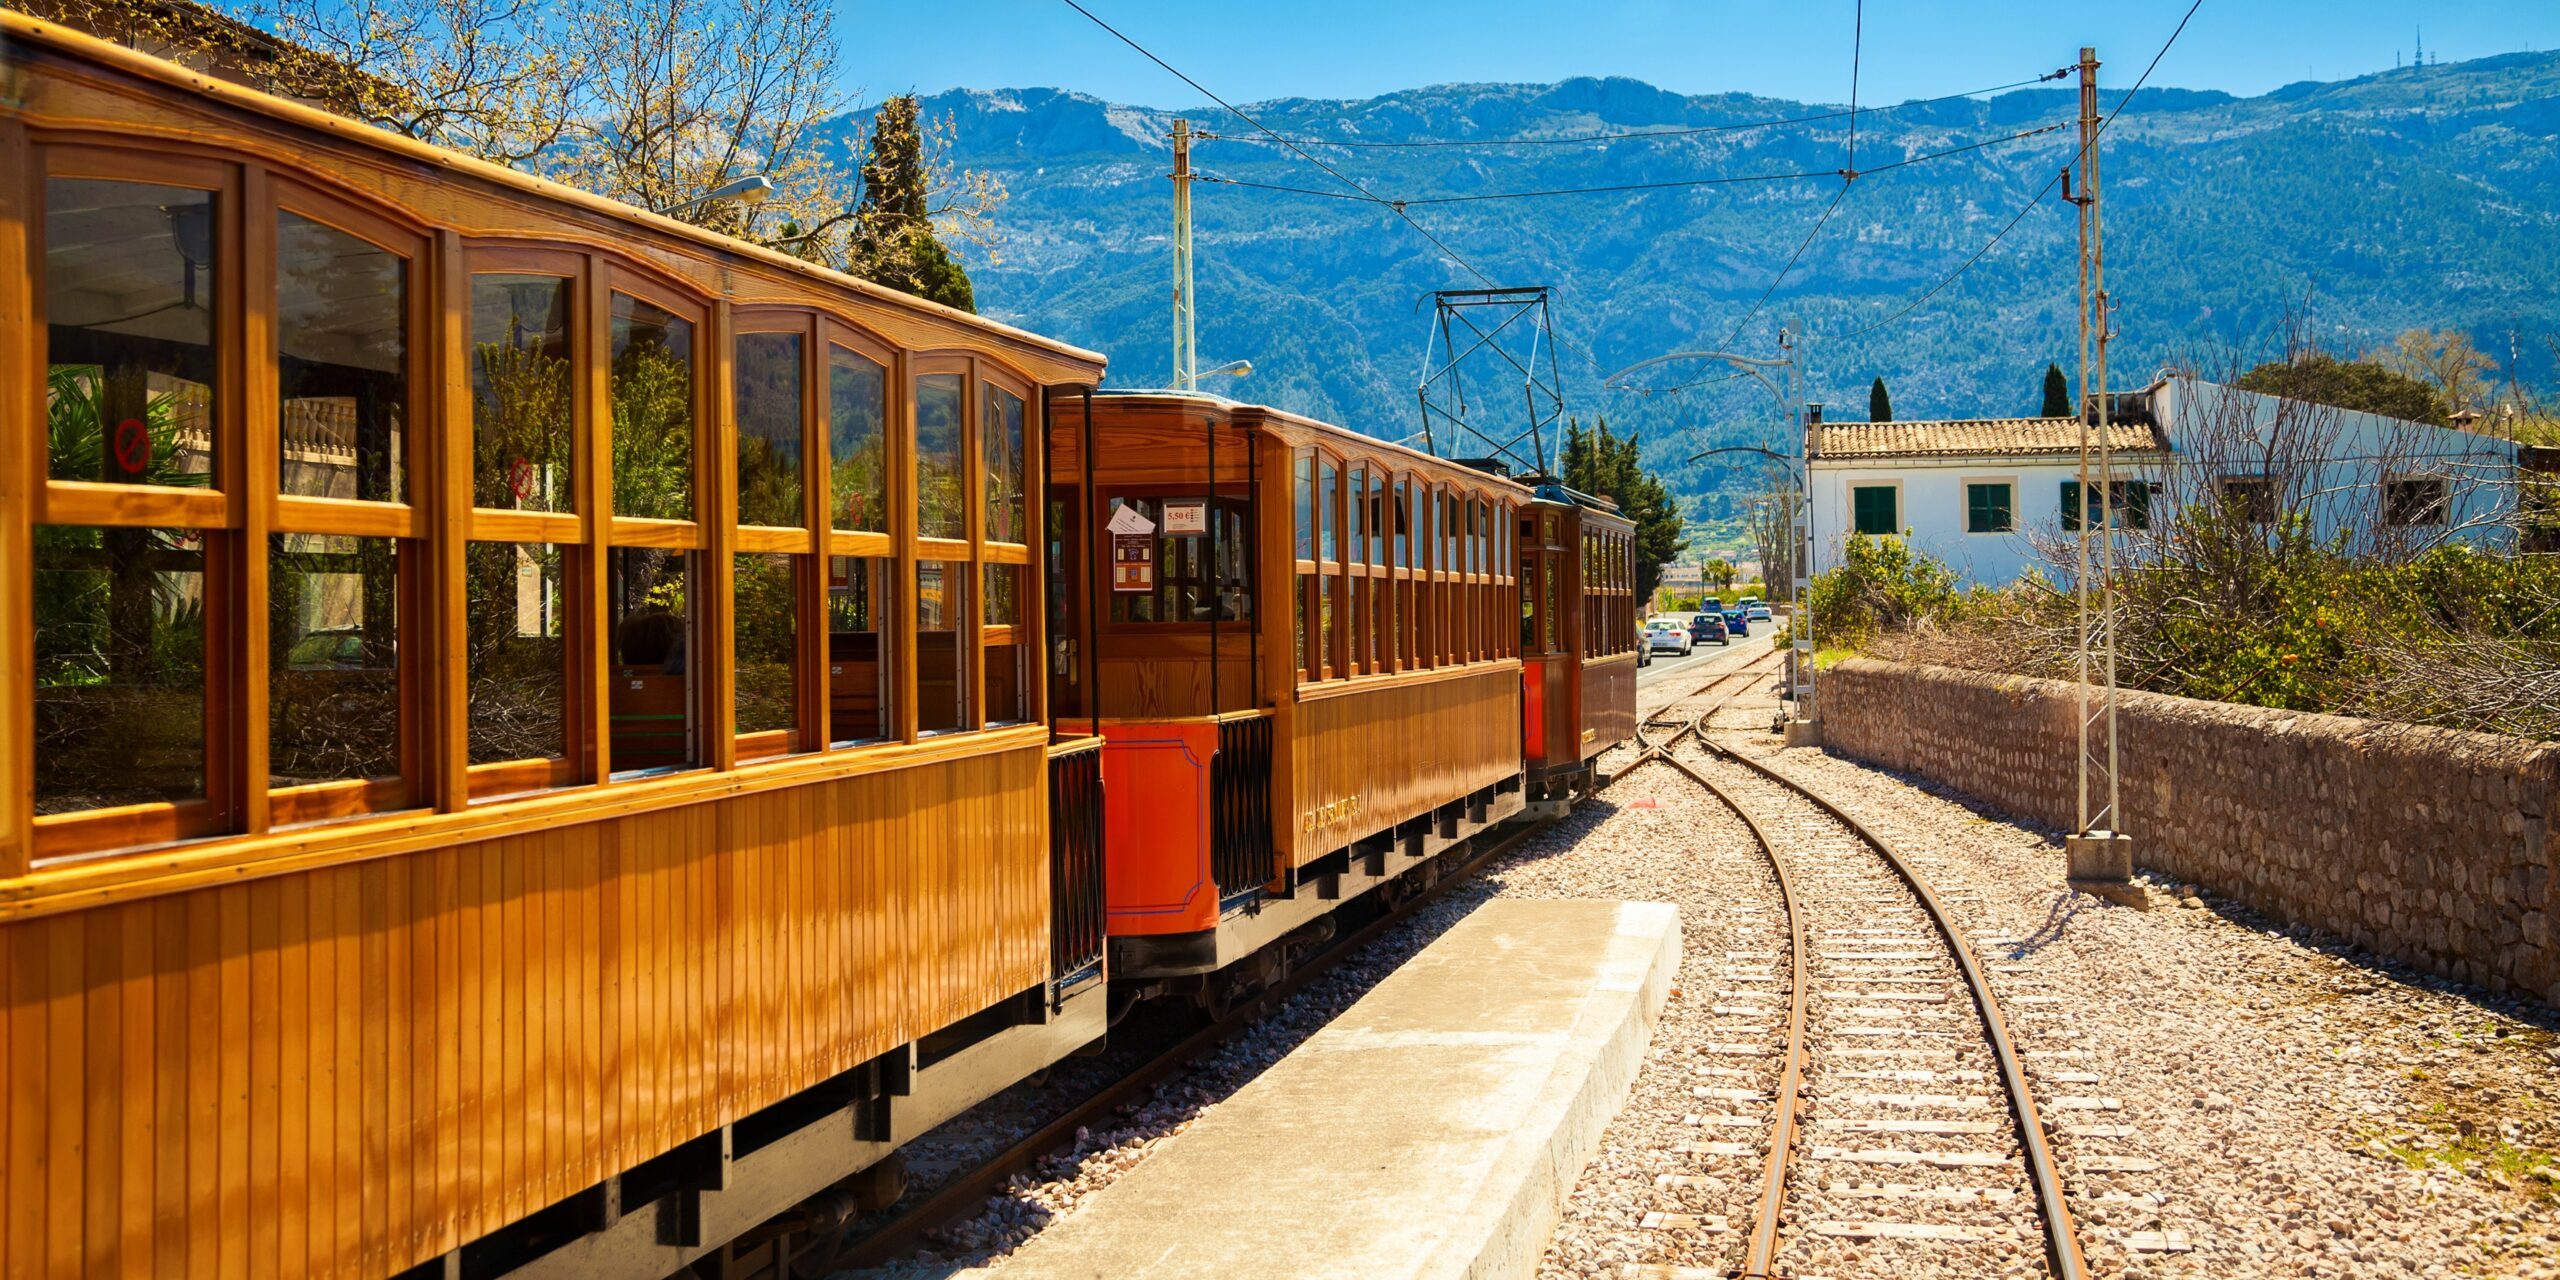 Le train historique qui relie Palma à Soller est une activité incontournable à Majorque